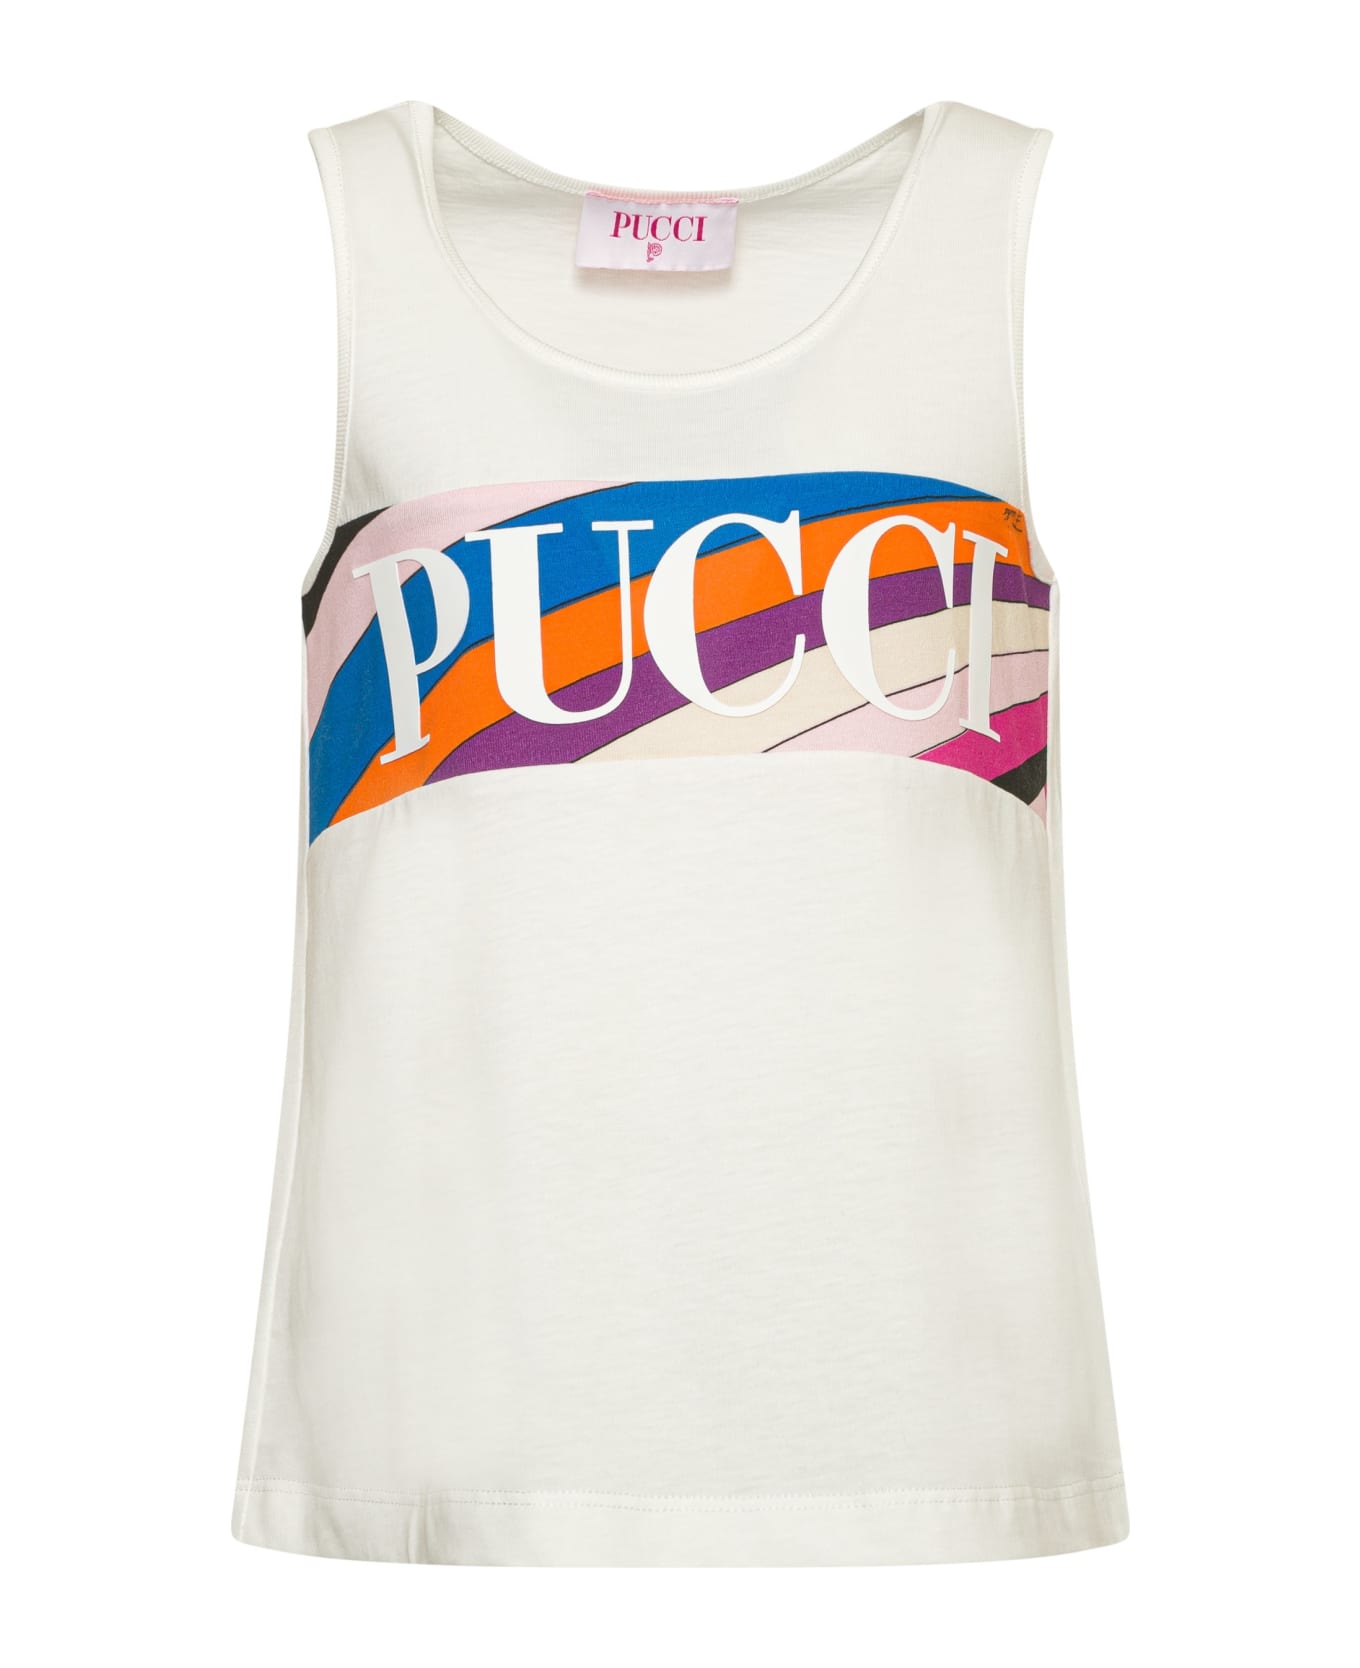 Pucci Canotta Con Logo - Cream